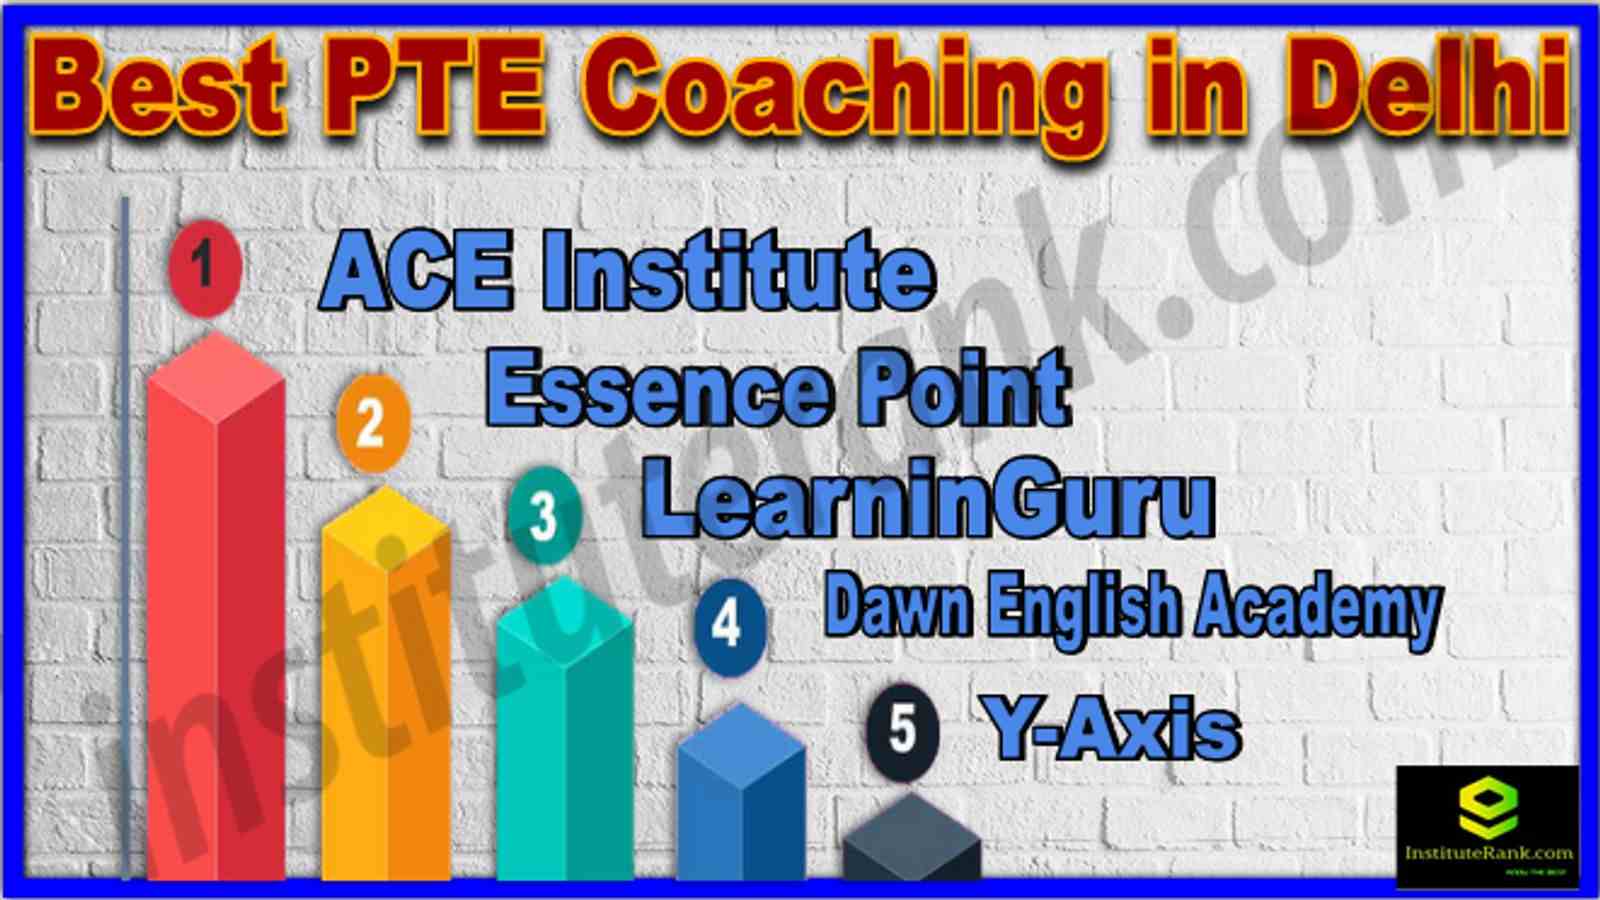 Top 10 PTE Coaching Institutes In Delhi 